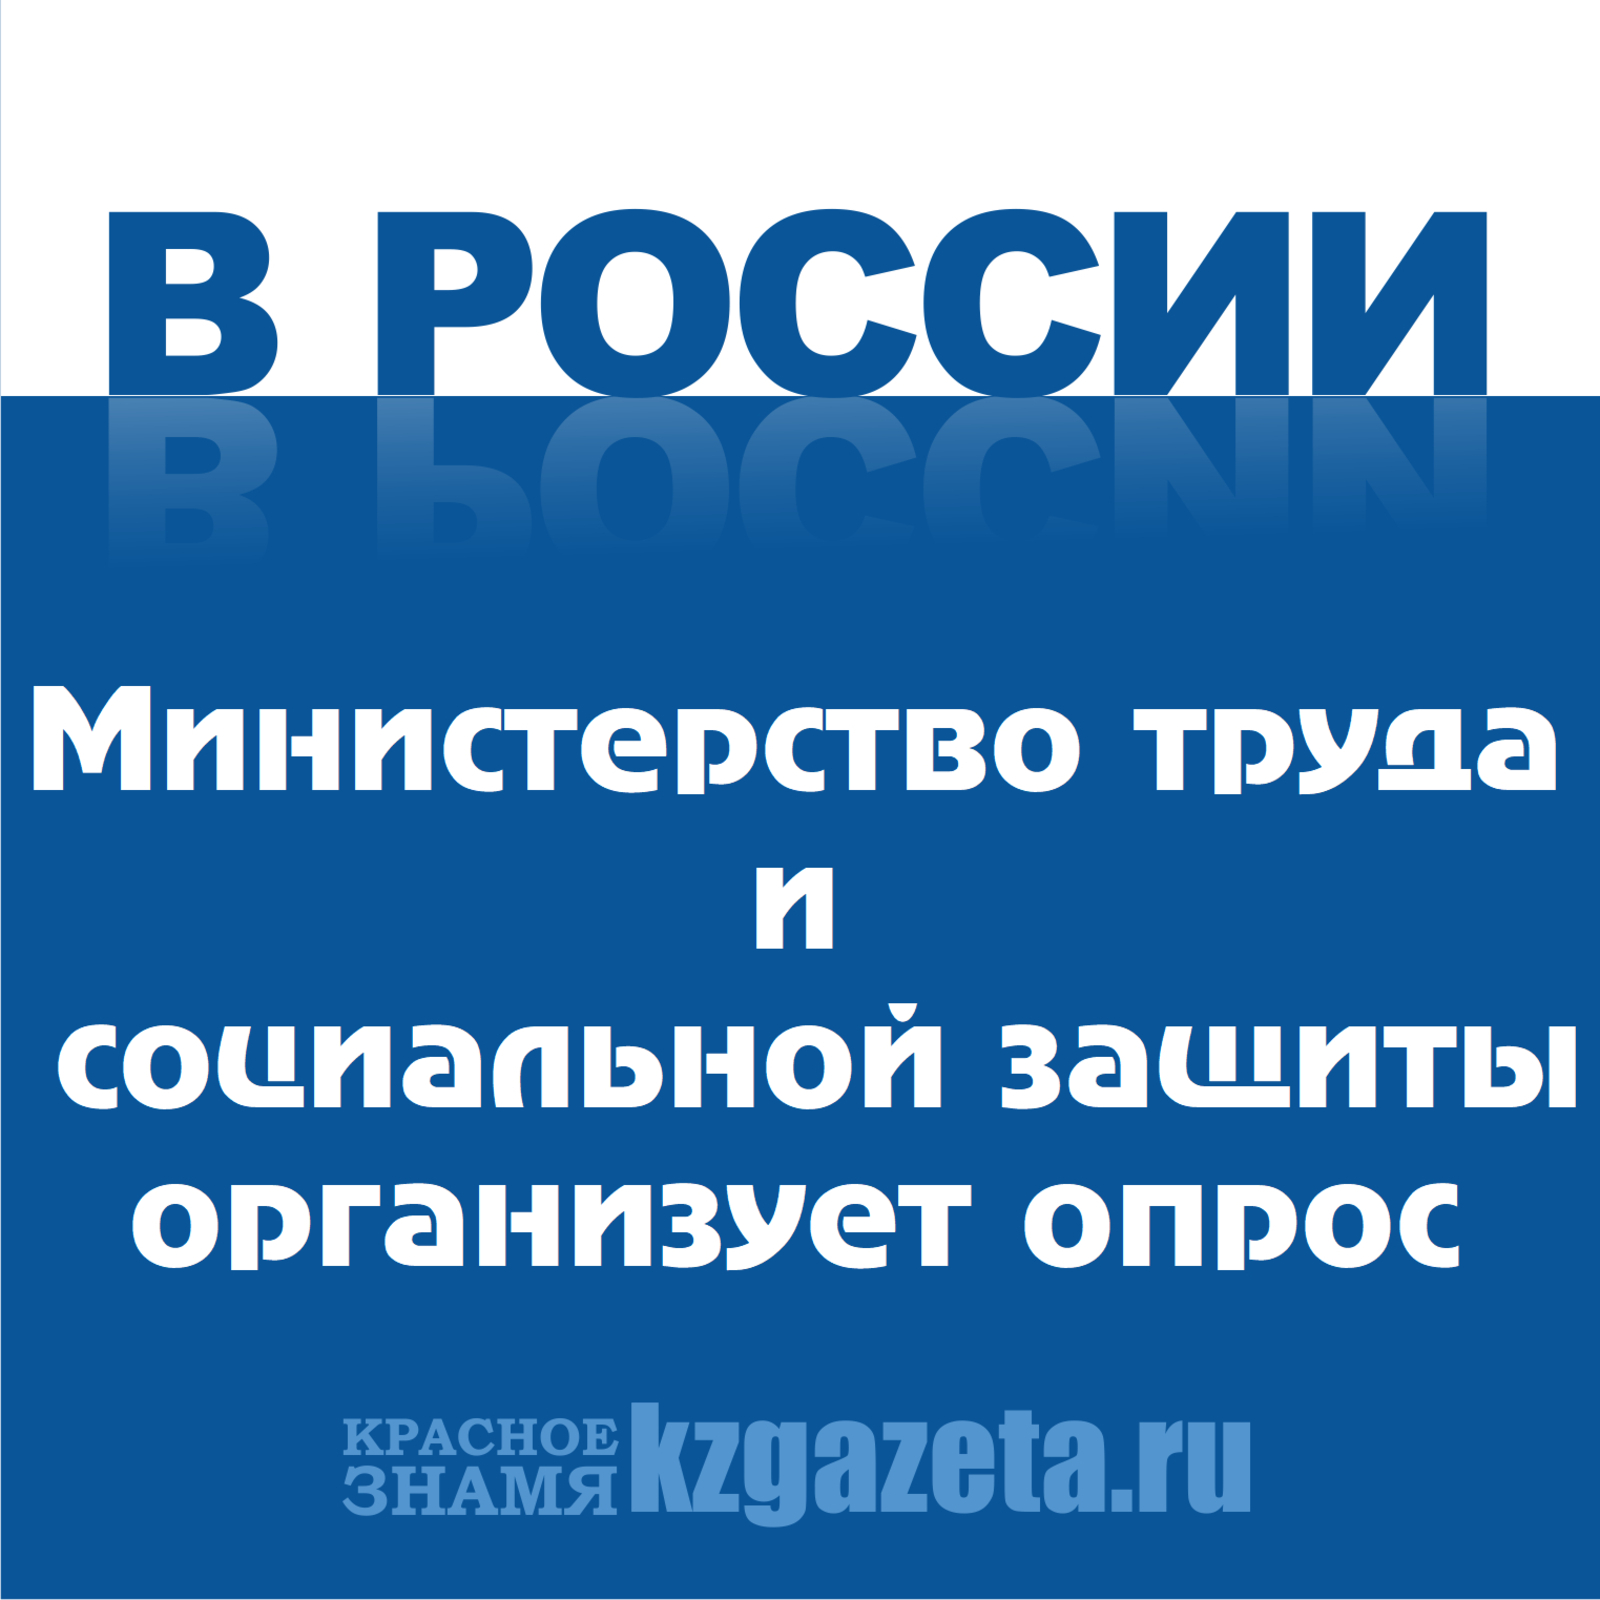 Министерство труда и социальной защиты РФ организует опрос